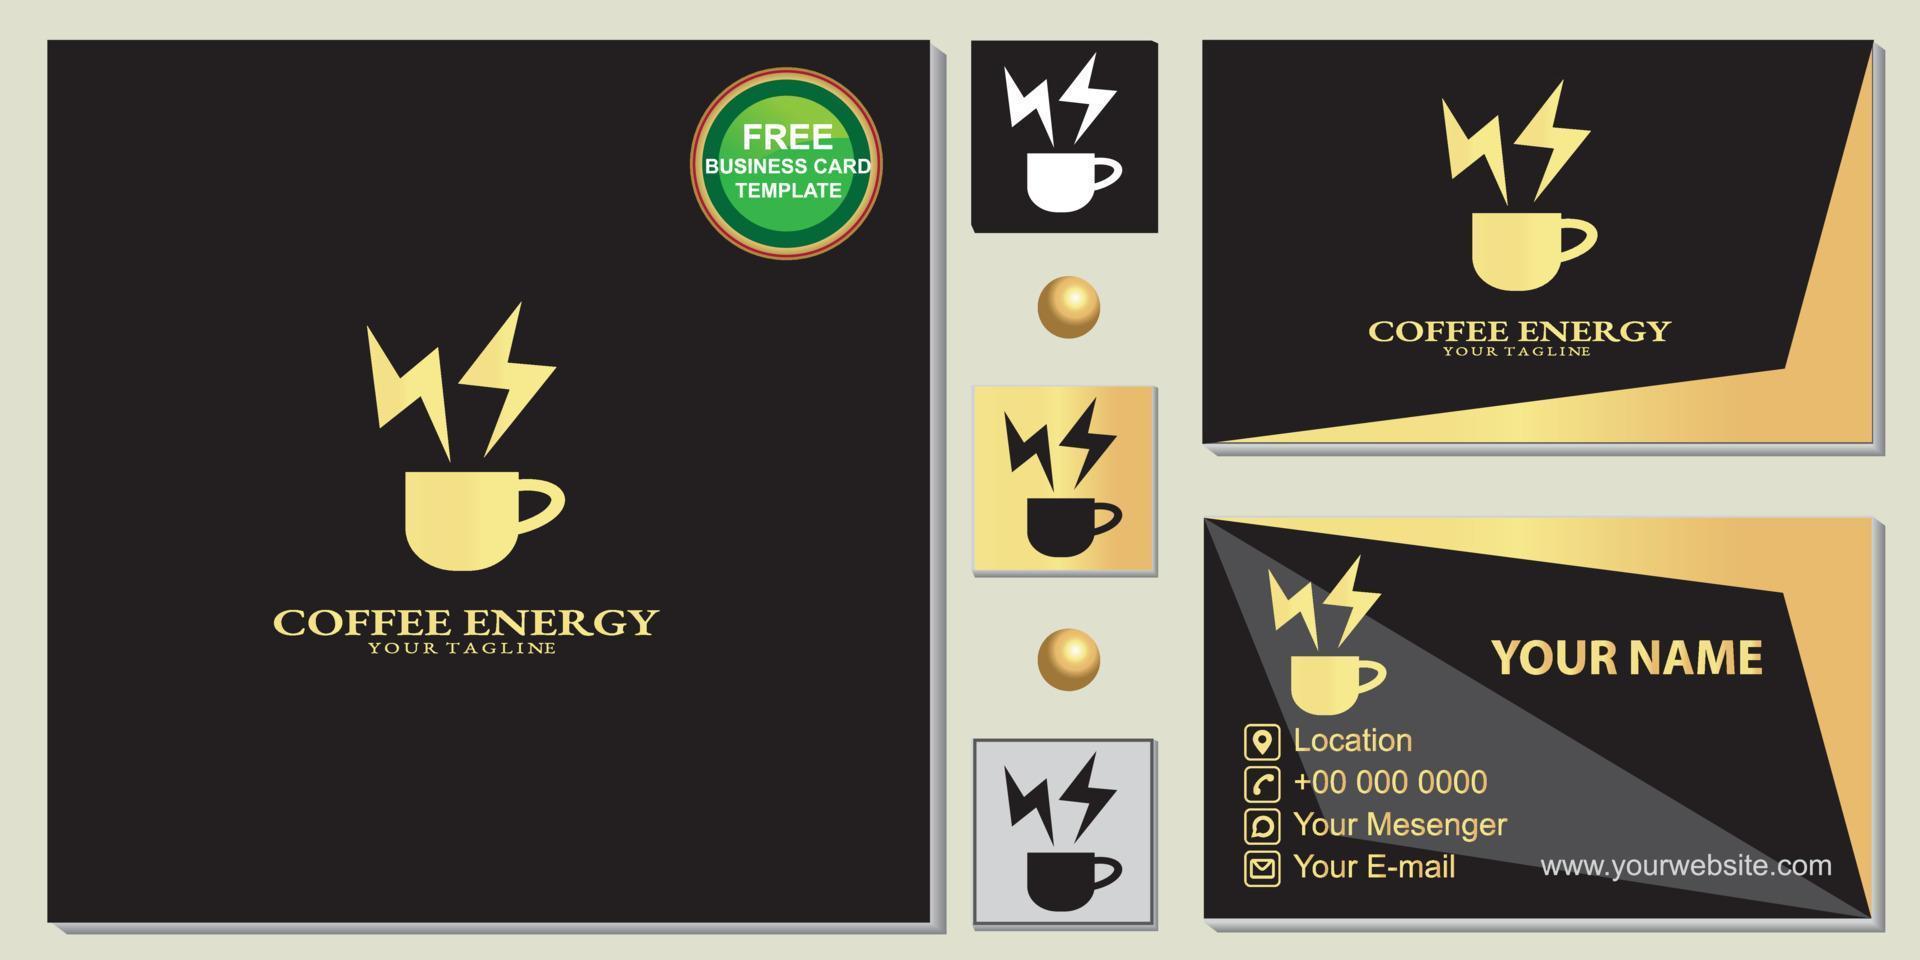 logotipo de la cafetería de energía dorada de lujo, negro simple, plantilla de tarjeta de visita premium gratis vector eps 10